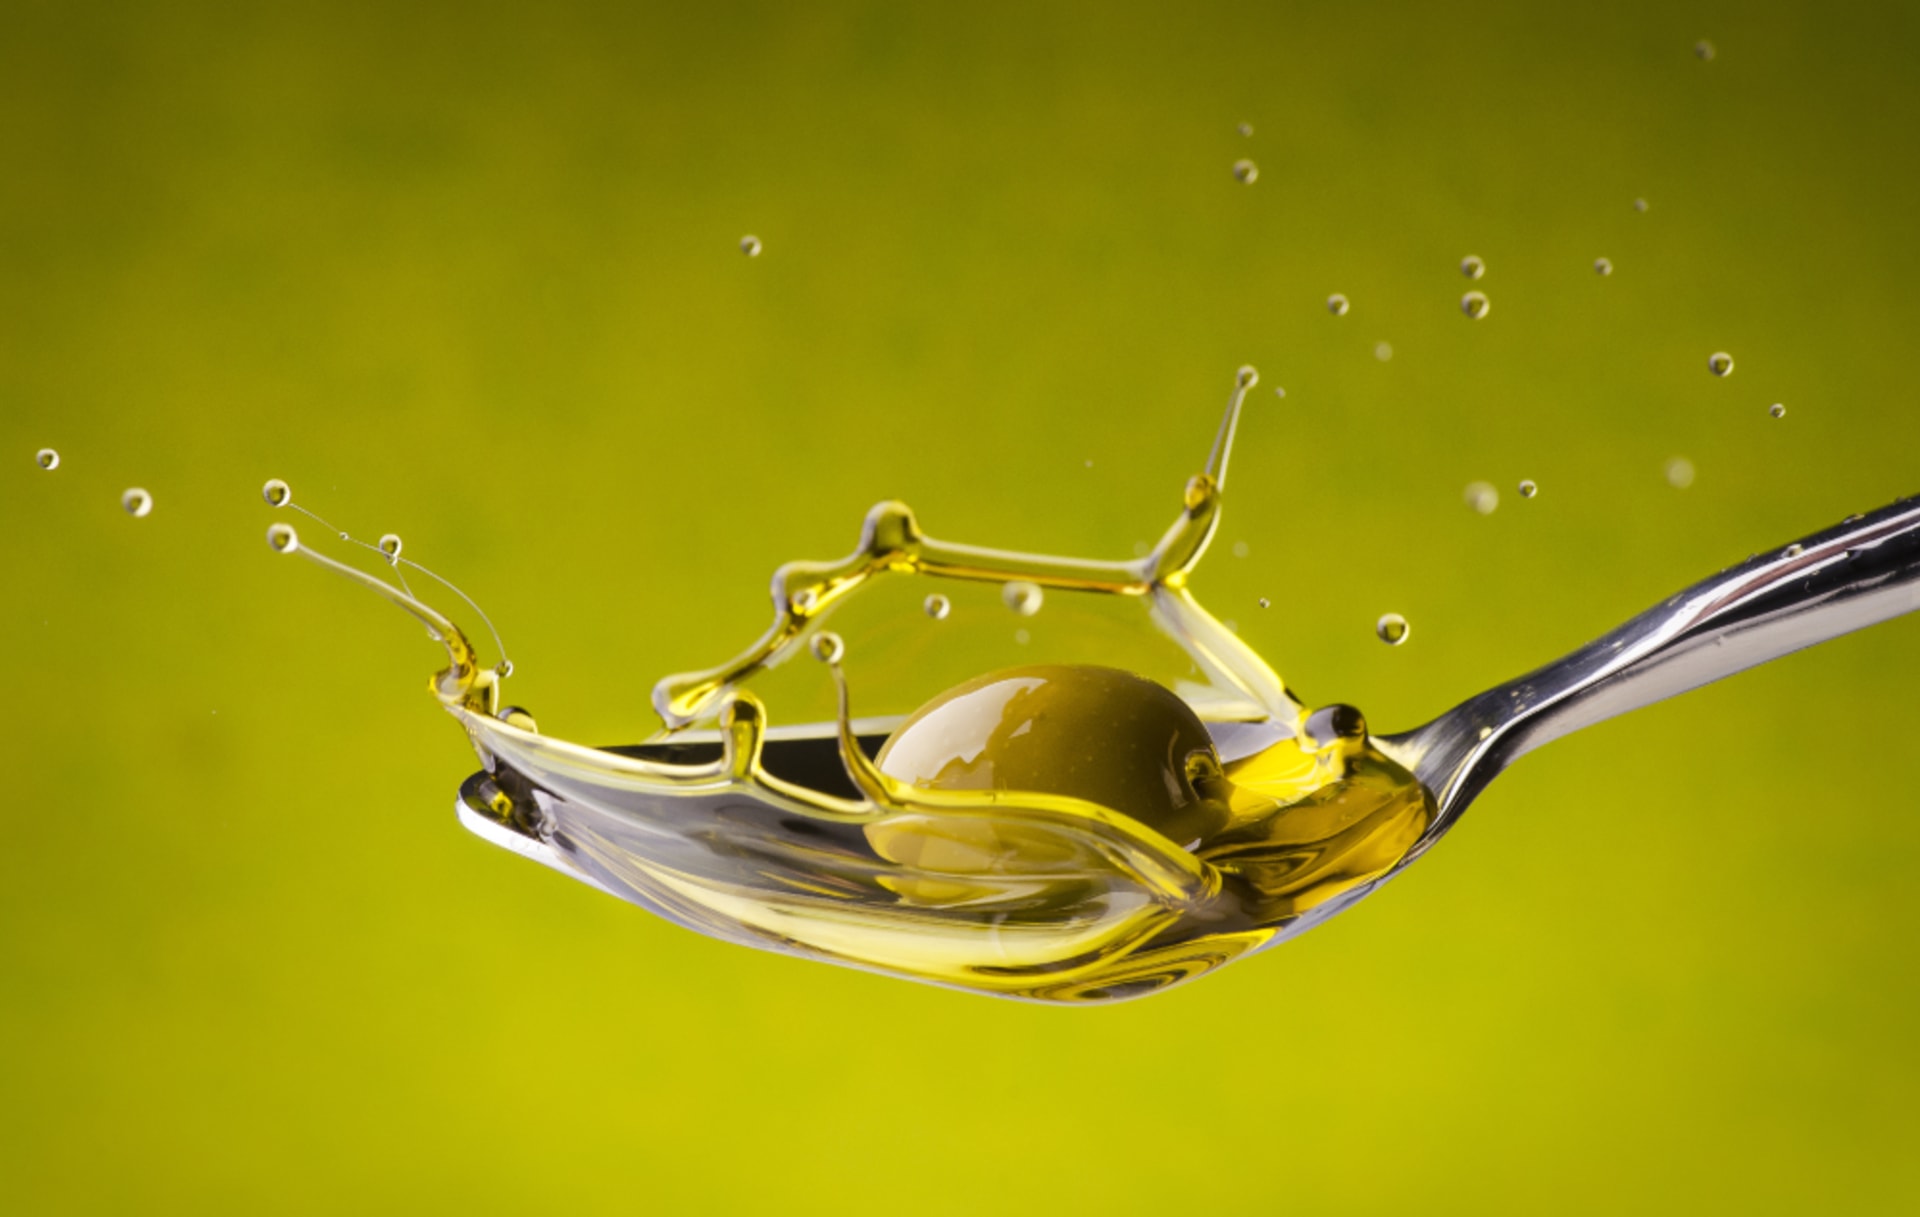 Enzimas y tecnologías de AEB Group para optimizar el proceso de extracción del aceite de oliva extra virgen